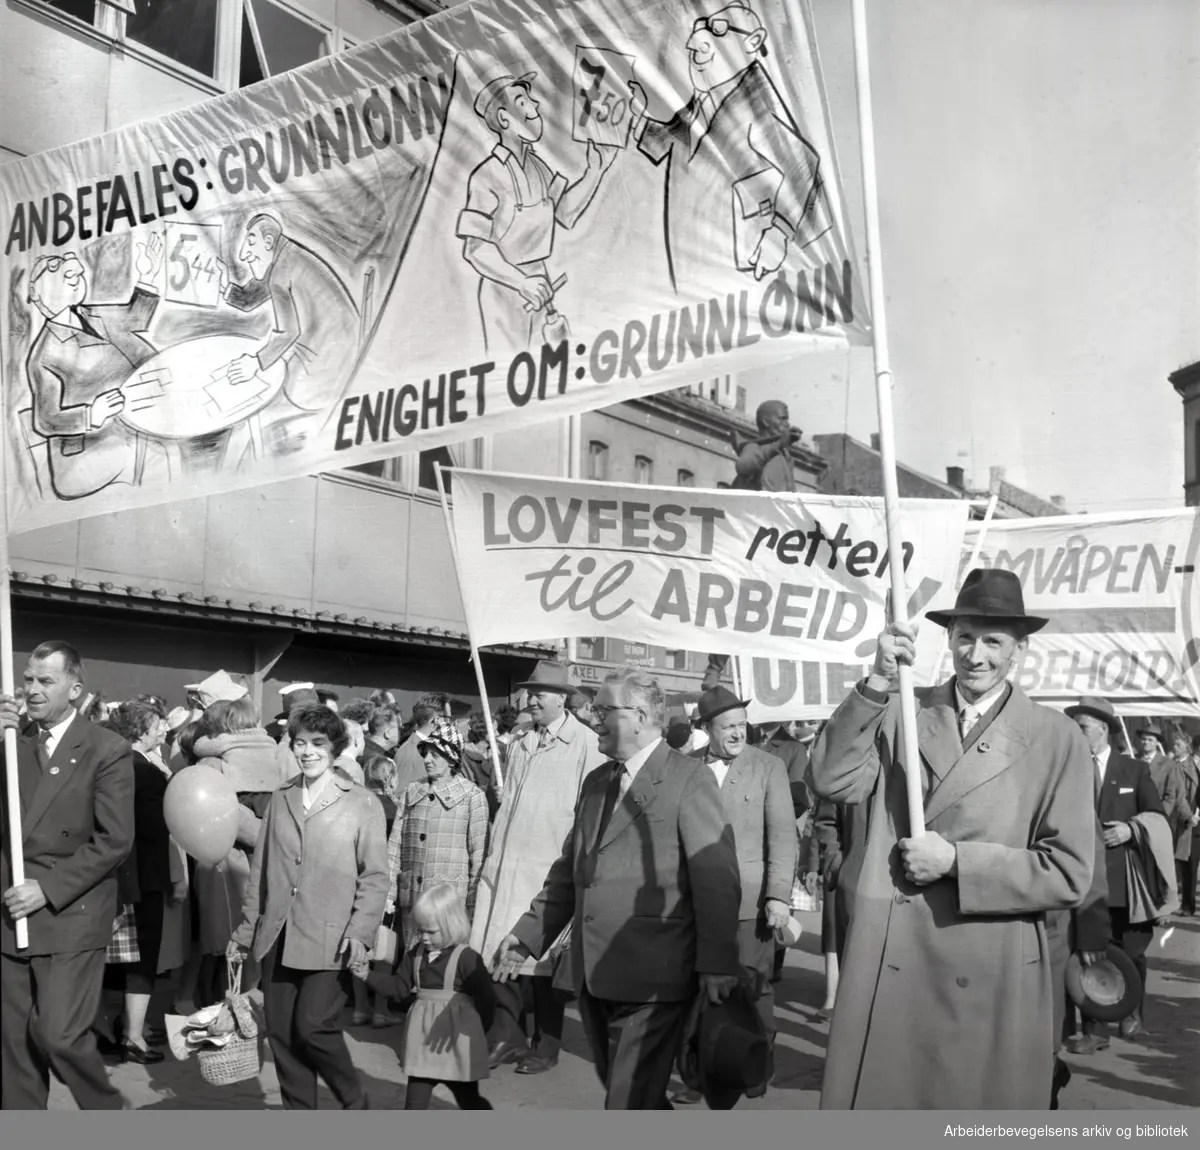 1. mai 1961, kommunistpartiets demonstrasjonstog på Youngstorget. Parole: Anbefales: Grunnlønn. Enighet om: Grunnlønn.Parole: Lovfest retten til arbeid.